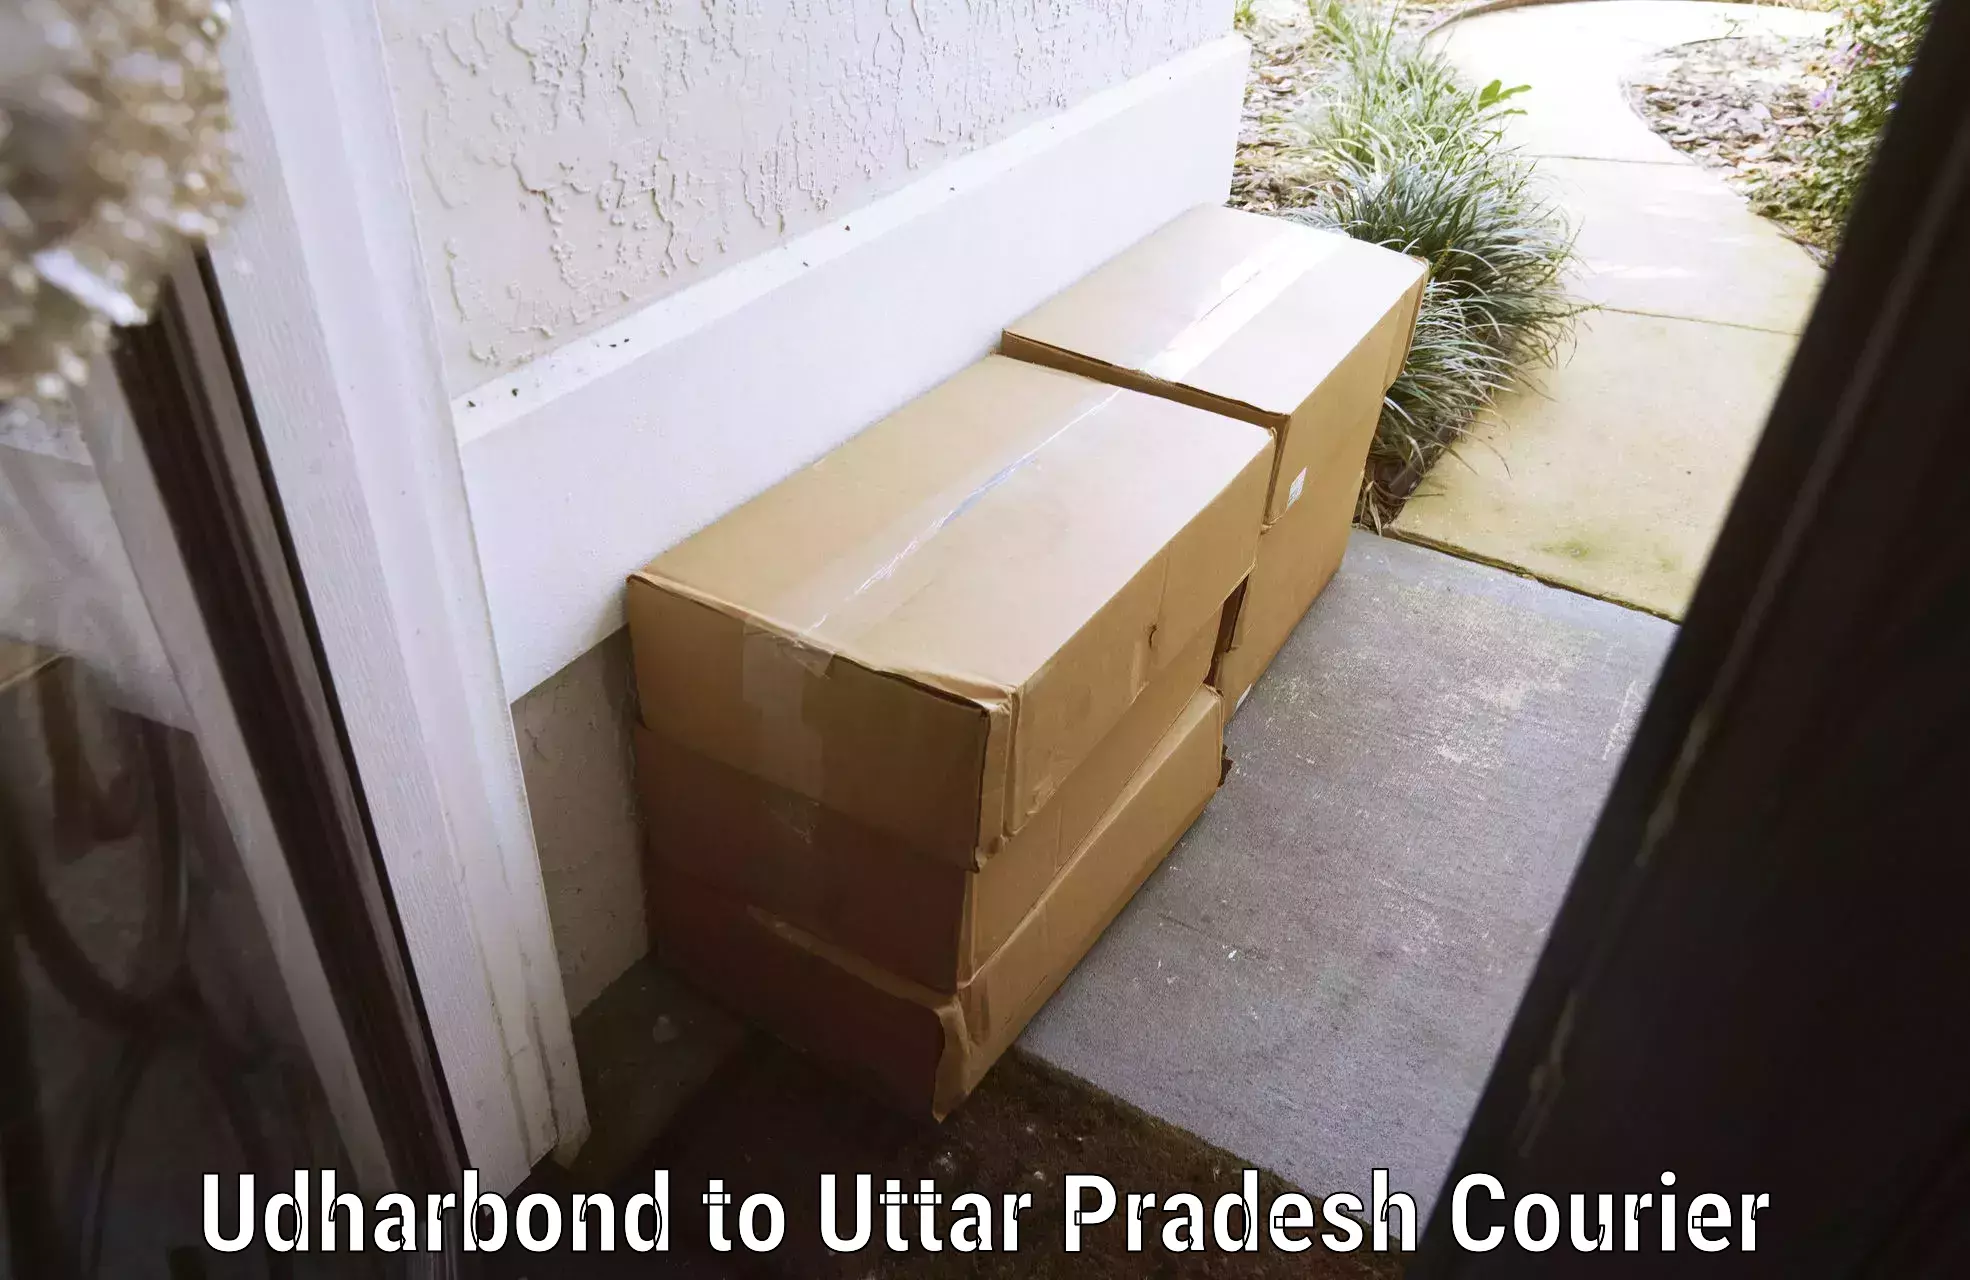 Luggage delivery estimate Udharbond to Thakurdwara